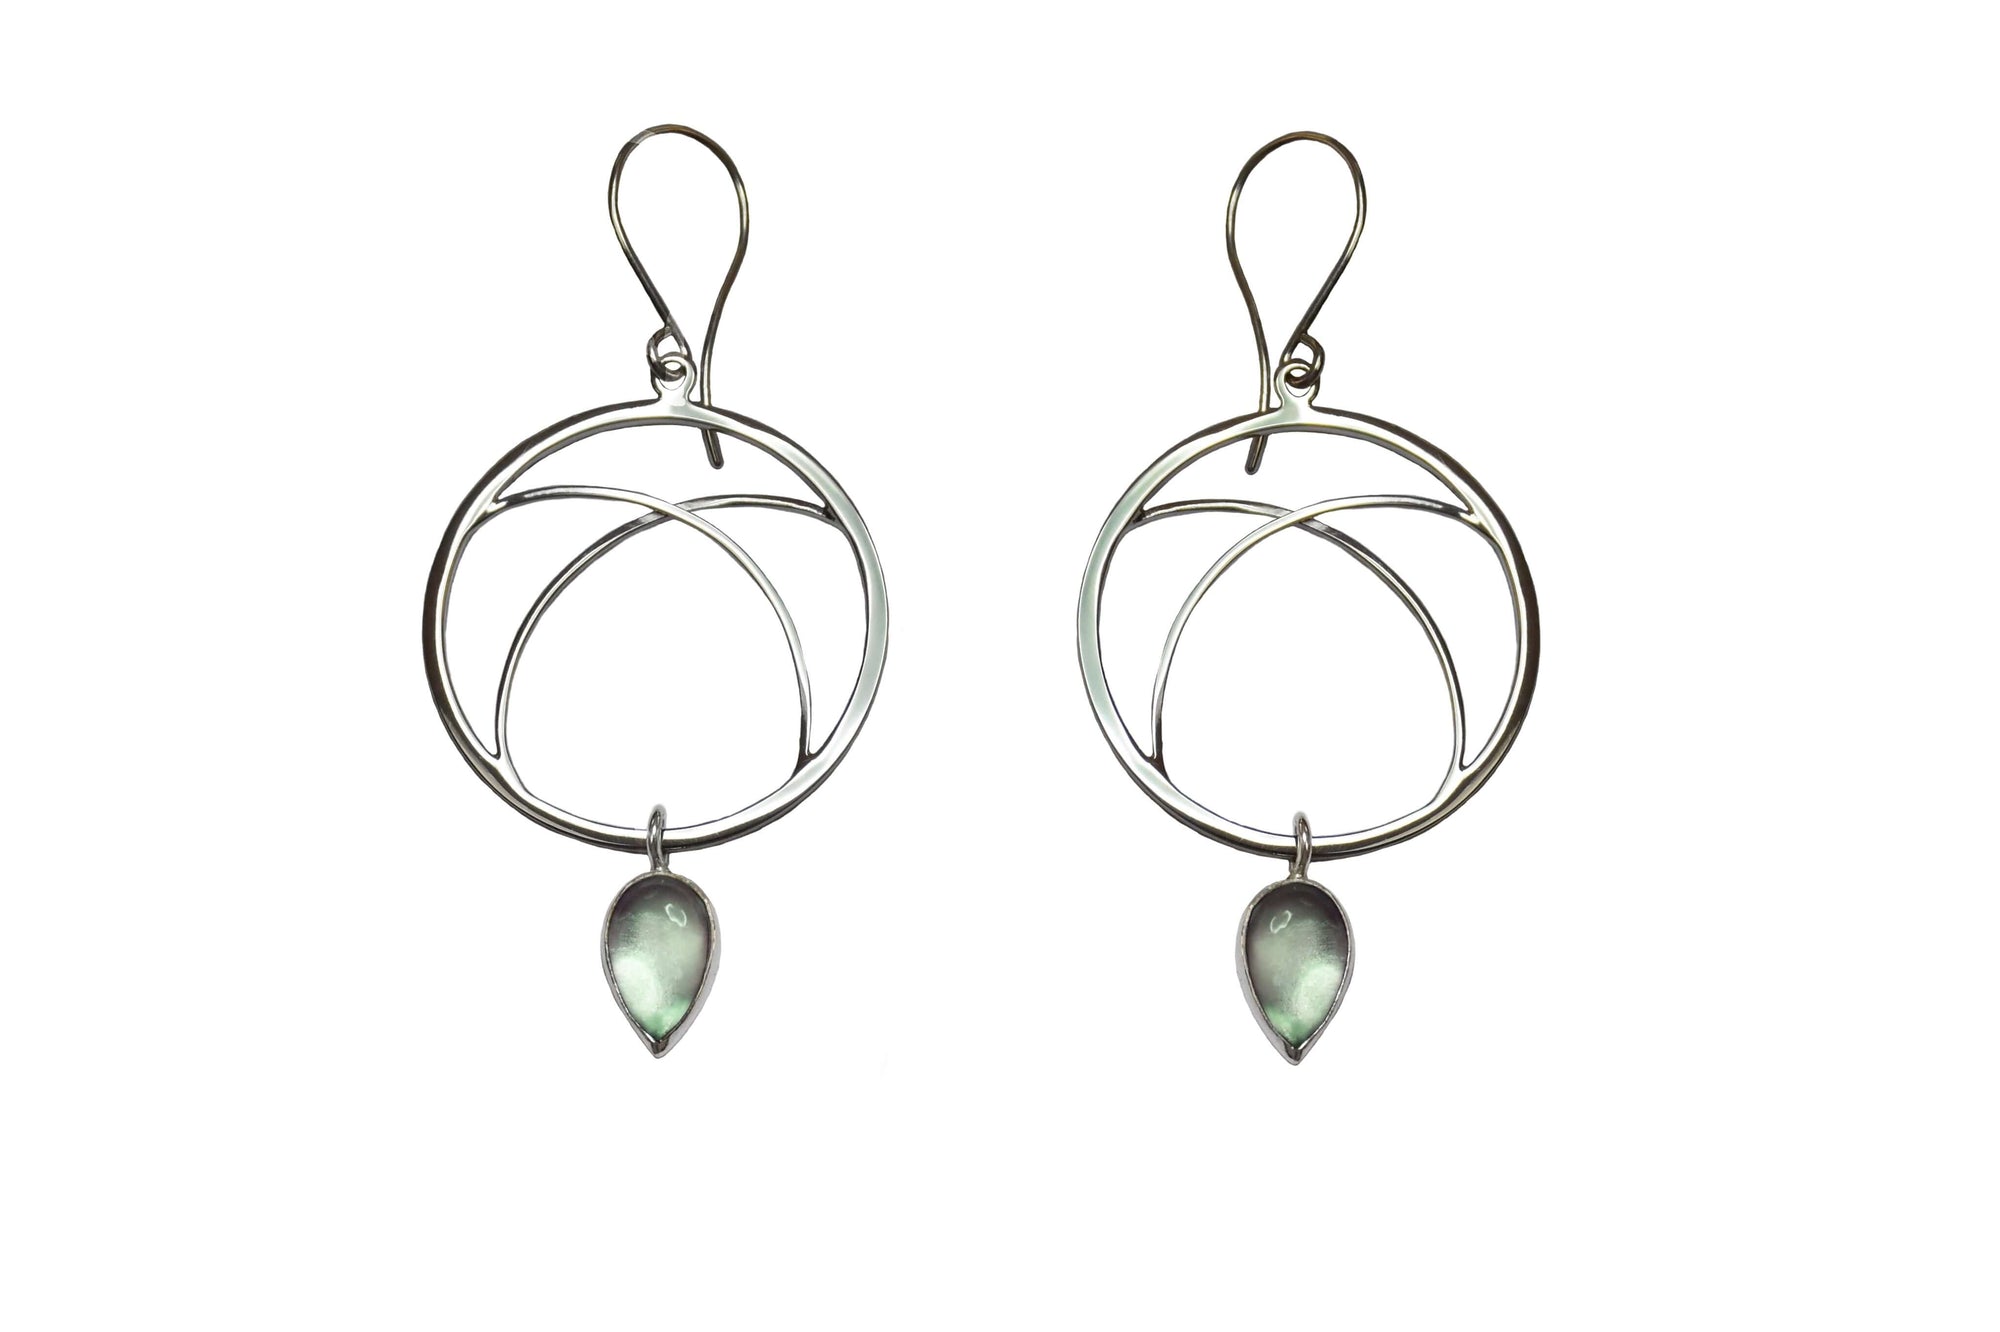 hoop earrings with gemstone drops in green prasiolite